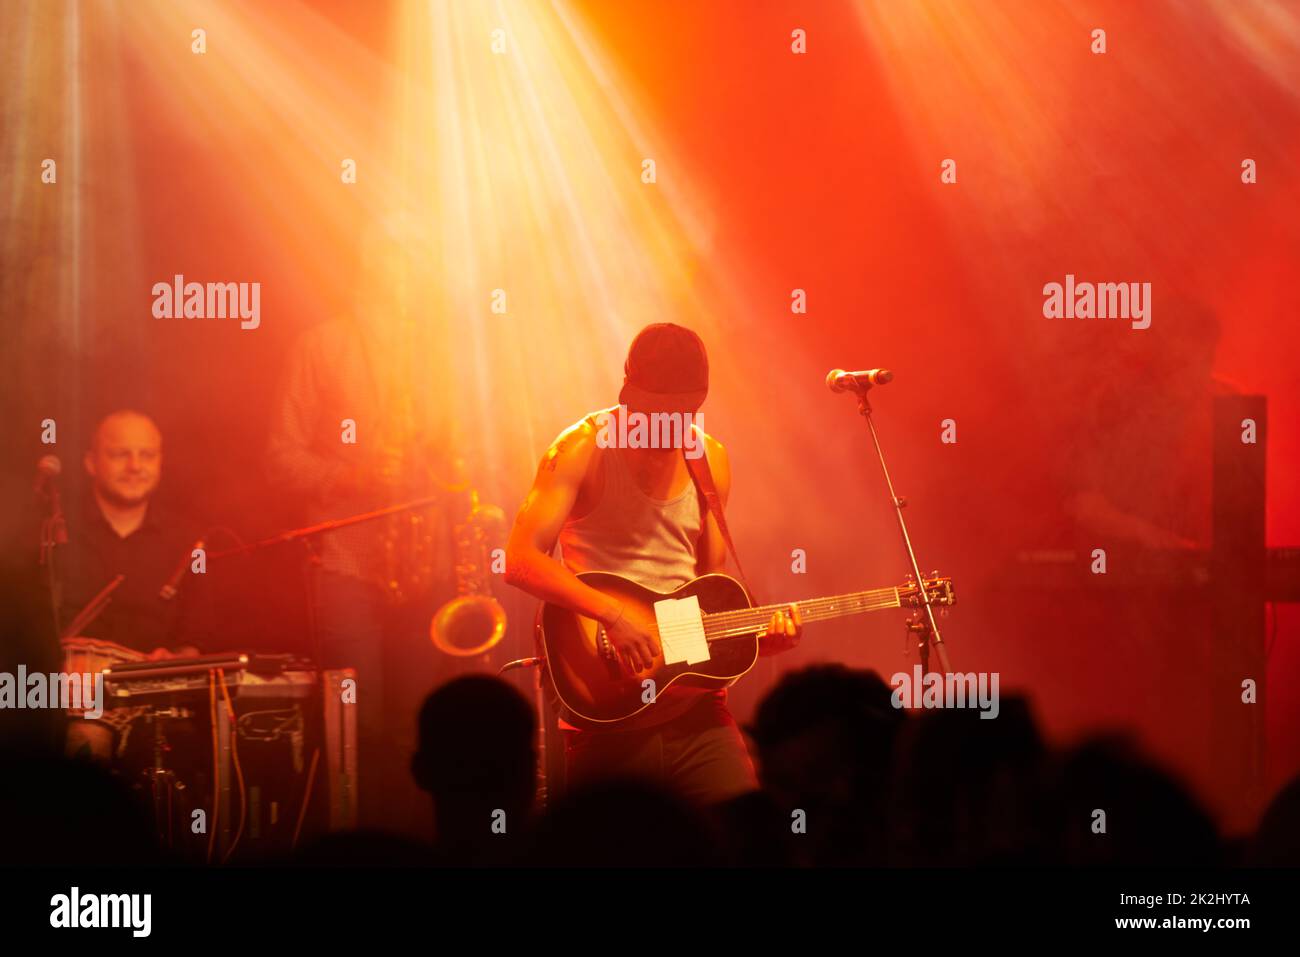 Den Fans das Solo geben. Aufnahme eines Gitarristen, der bei einem Konzert auf der Bühne spielt. Stockfoto